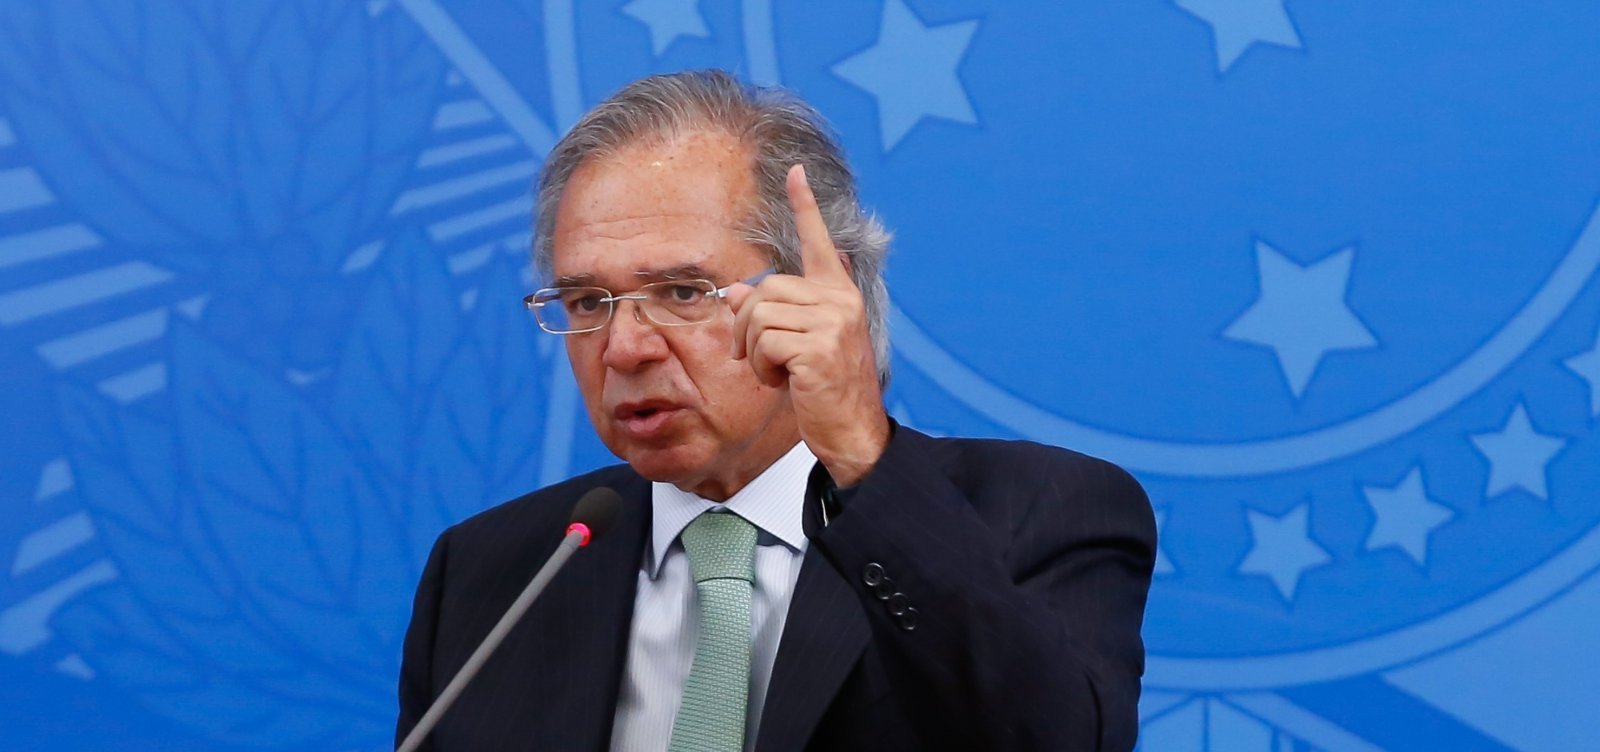 Guedes defende saída da 'letargia econômica' em dois estágios